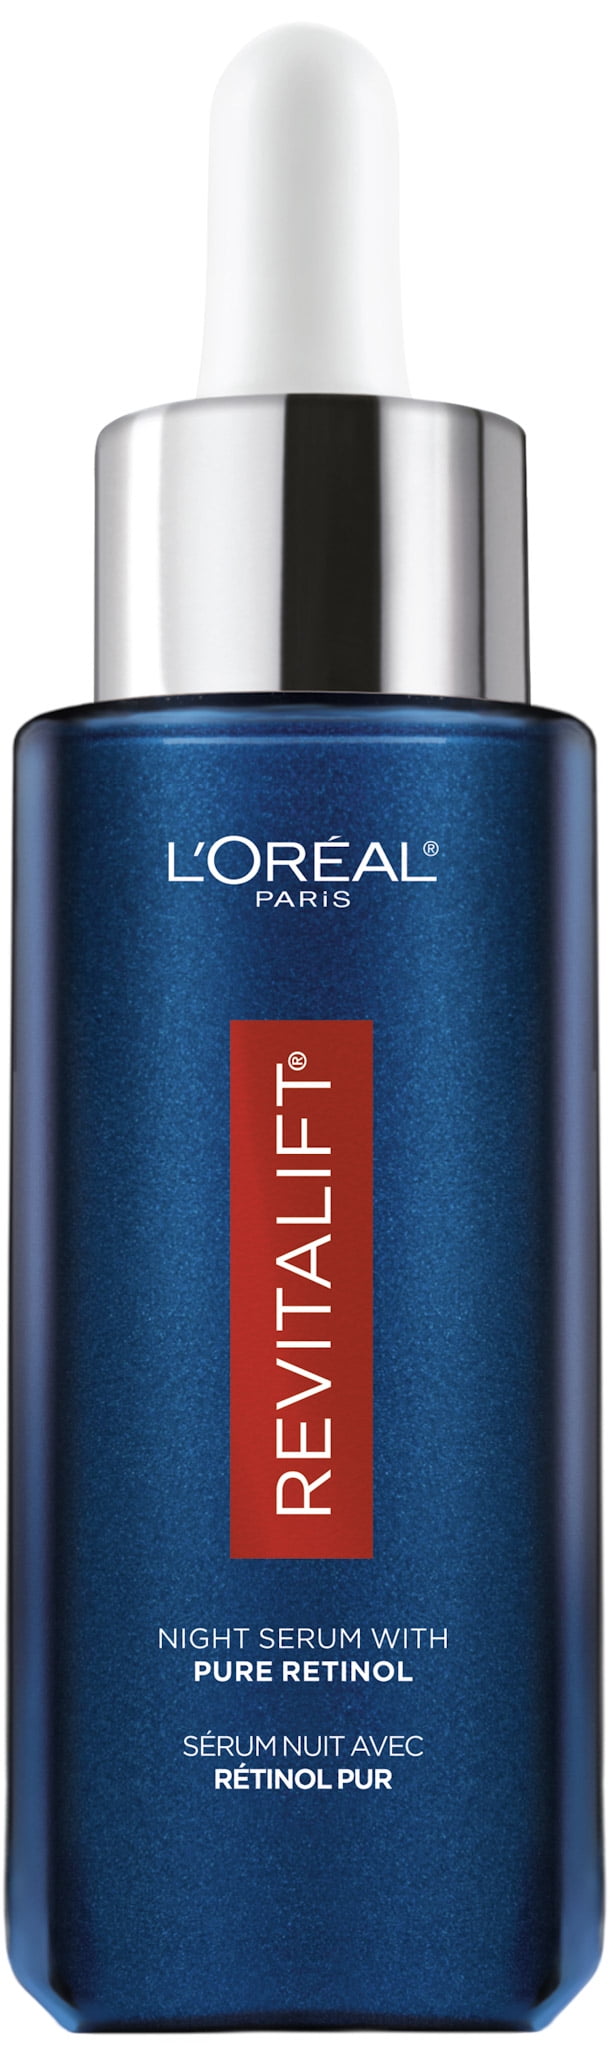 L'Oreal Paris Revitalift Pure Retinol Night Face Serum, 1 fl oz